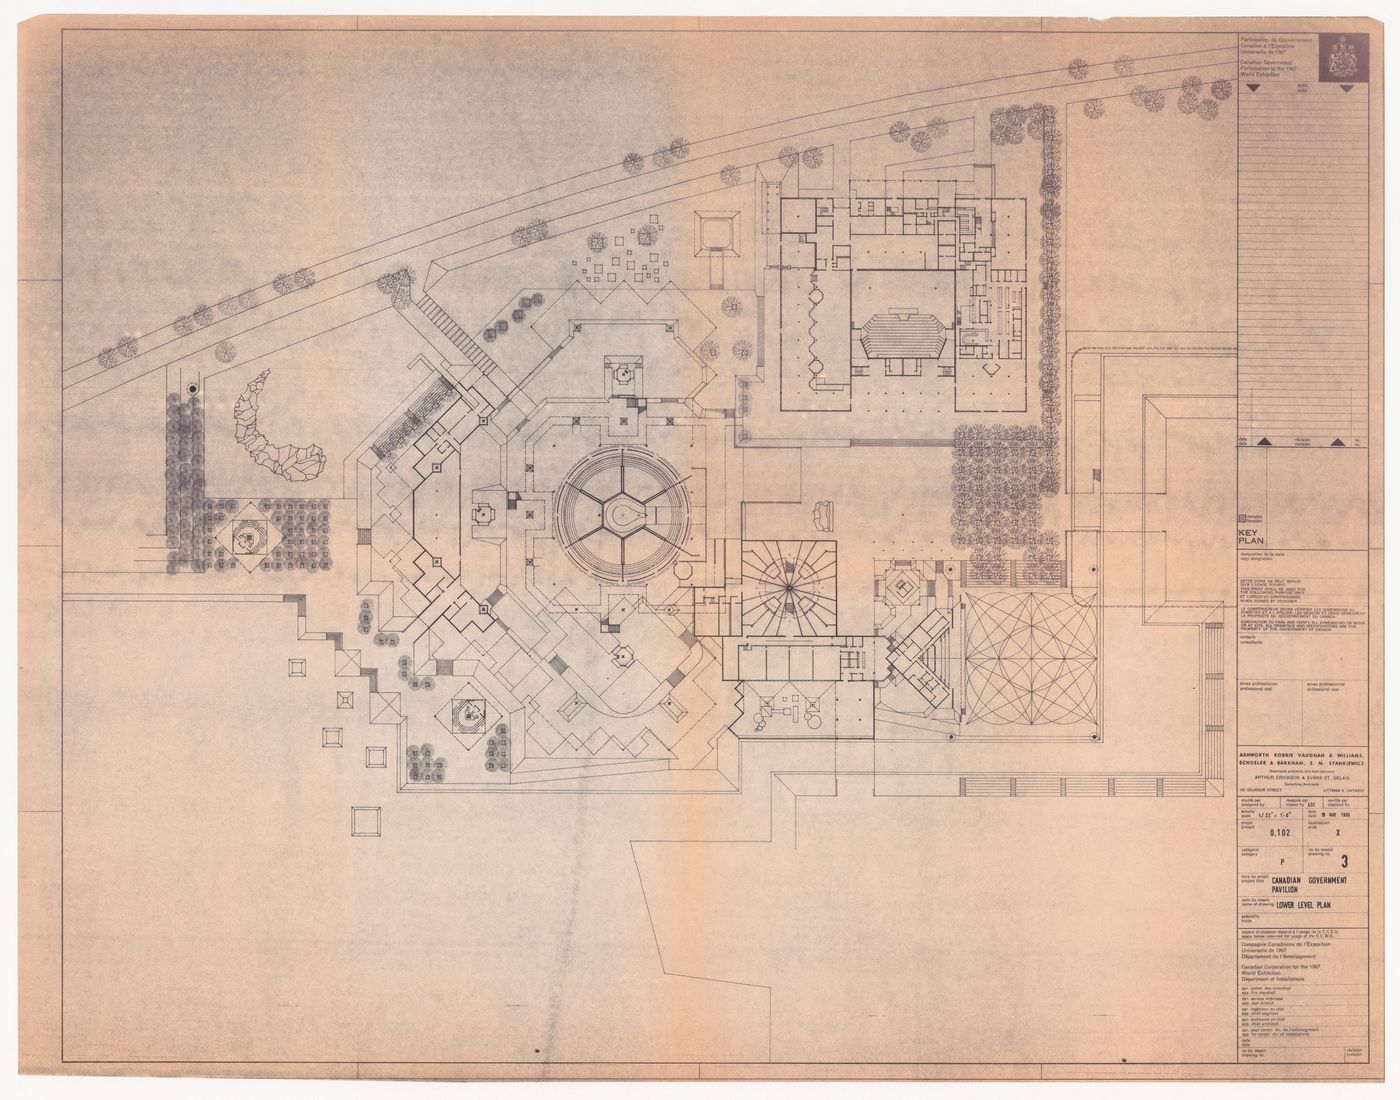 Plan for Canadian Federal Pavilion, Expo '67, Montréal, Québec